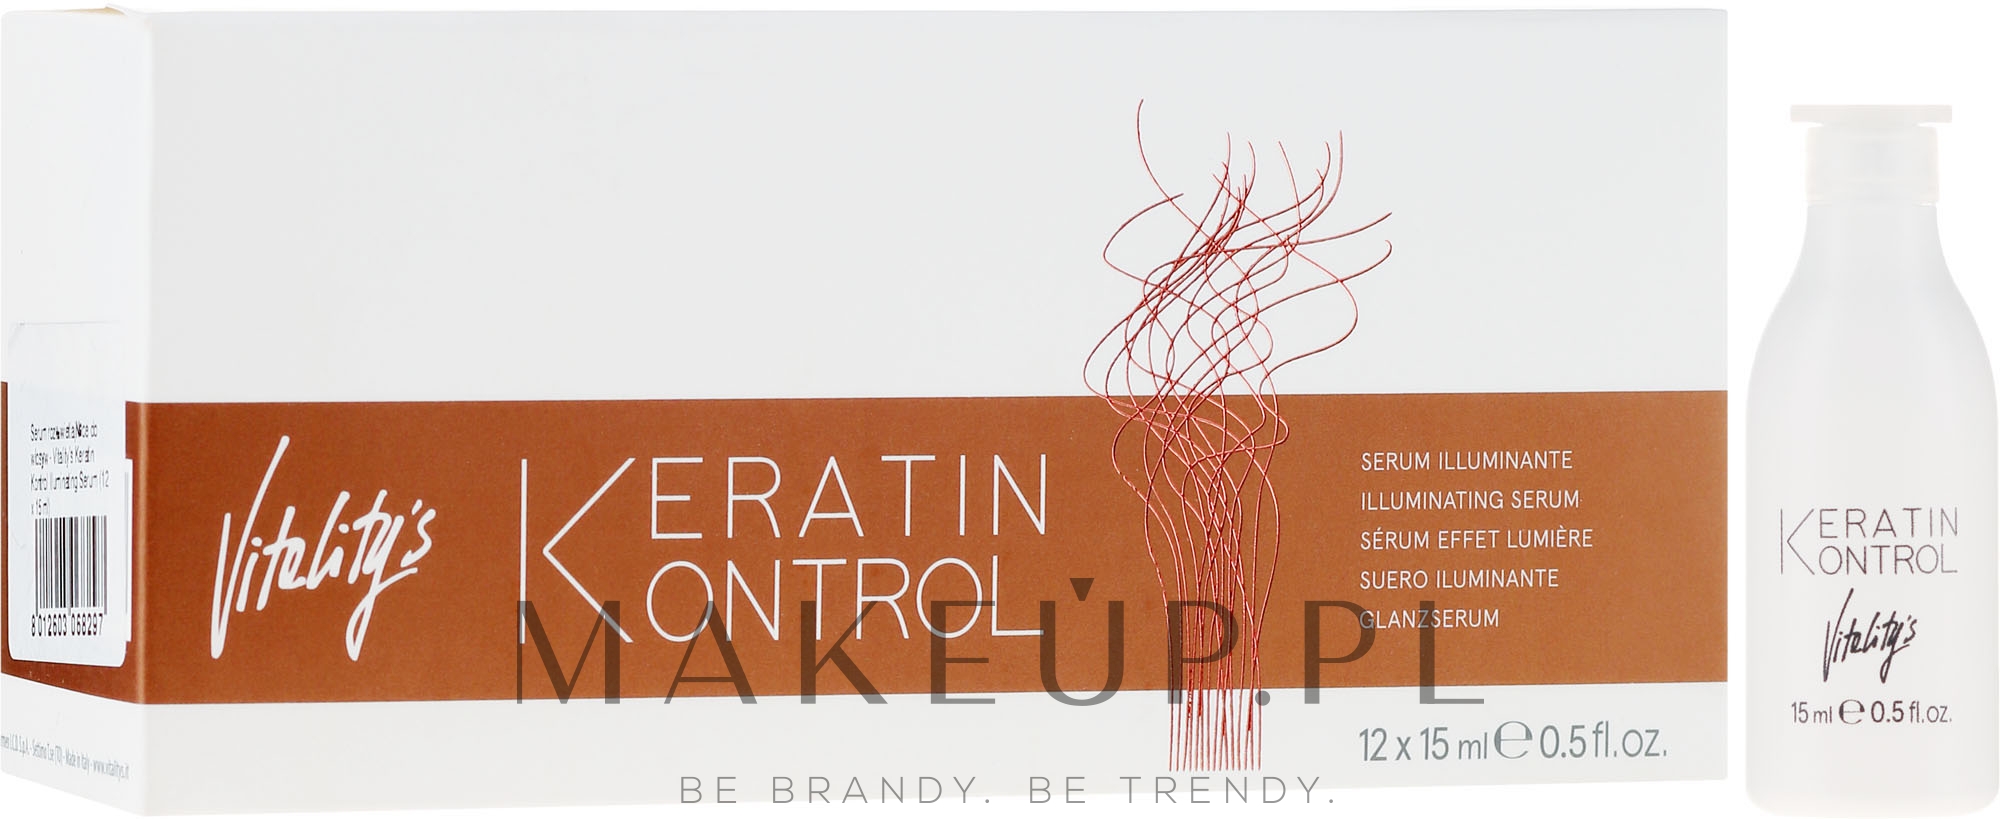 Serum rozświetlające do włosów - Vitality's Keratin Kontrol Illuminating Serum — Zdjęcie 12 x 15 ml